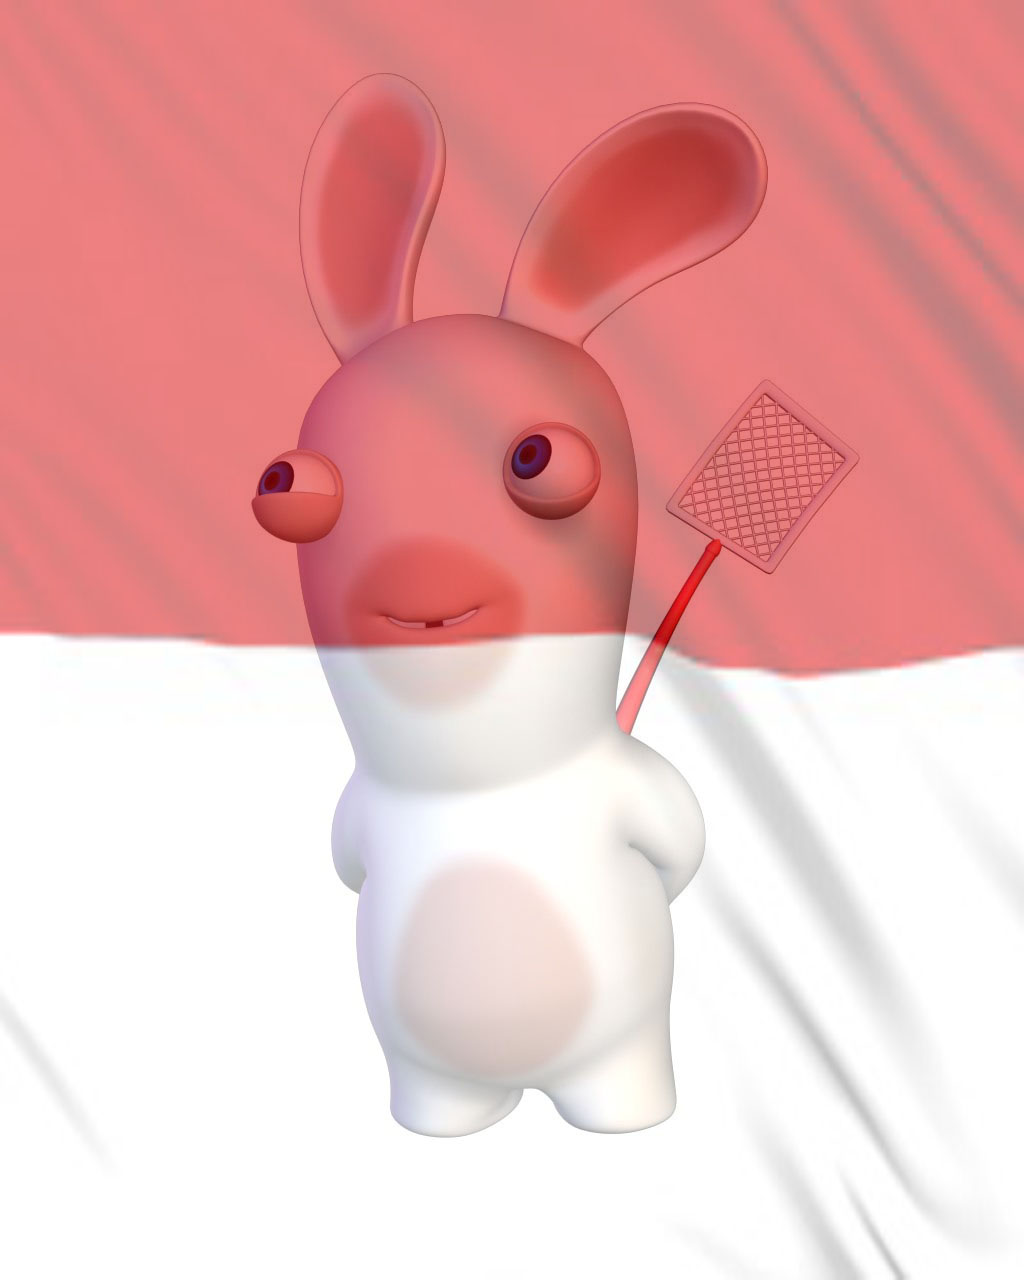 Cara Membuat Filter Bendera Indonesia Dengan Photoshop Untuk PP